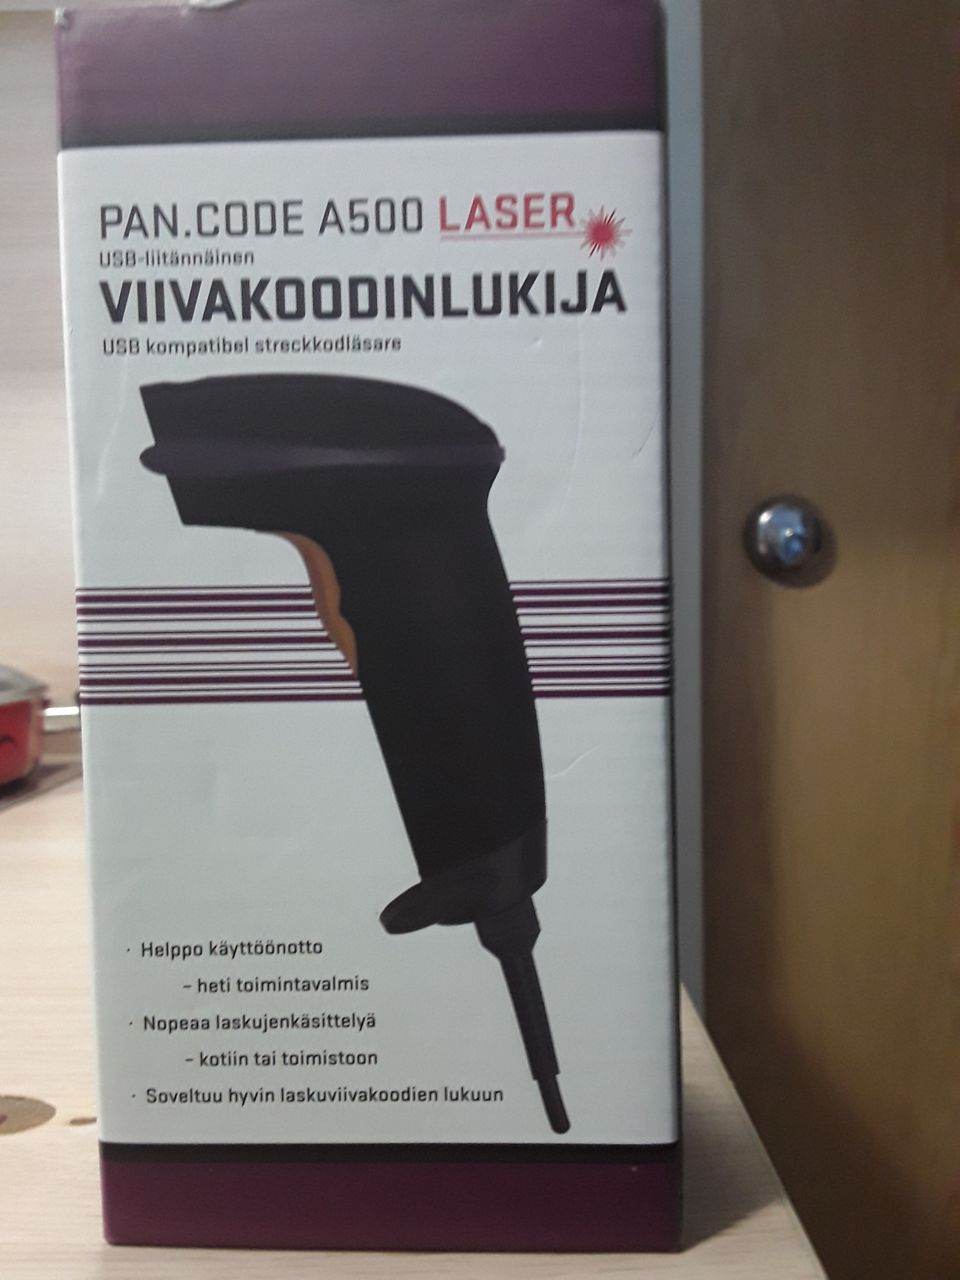 Pan.code laser viivakoodinlukija